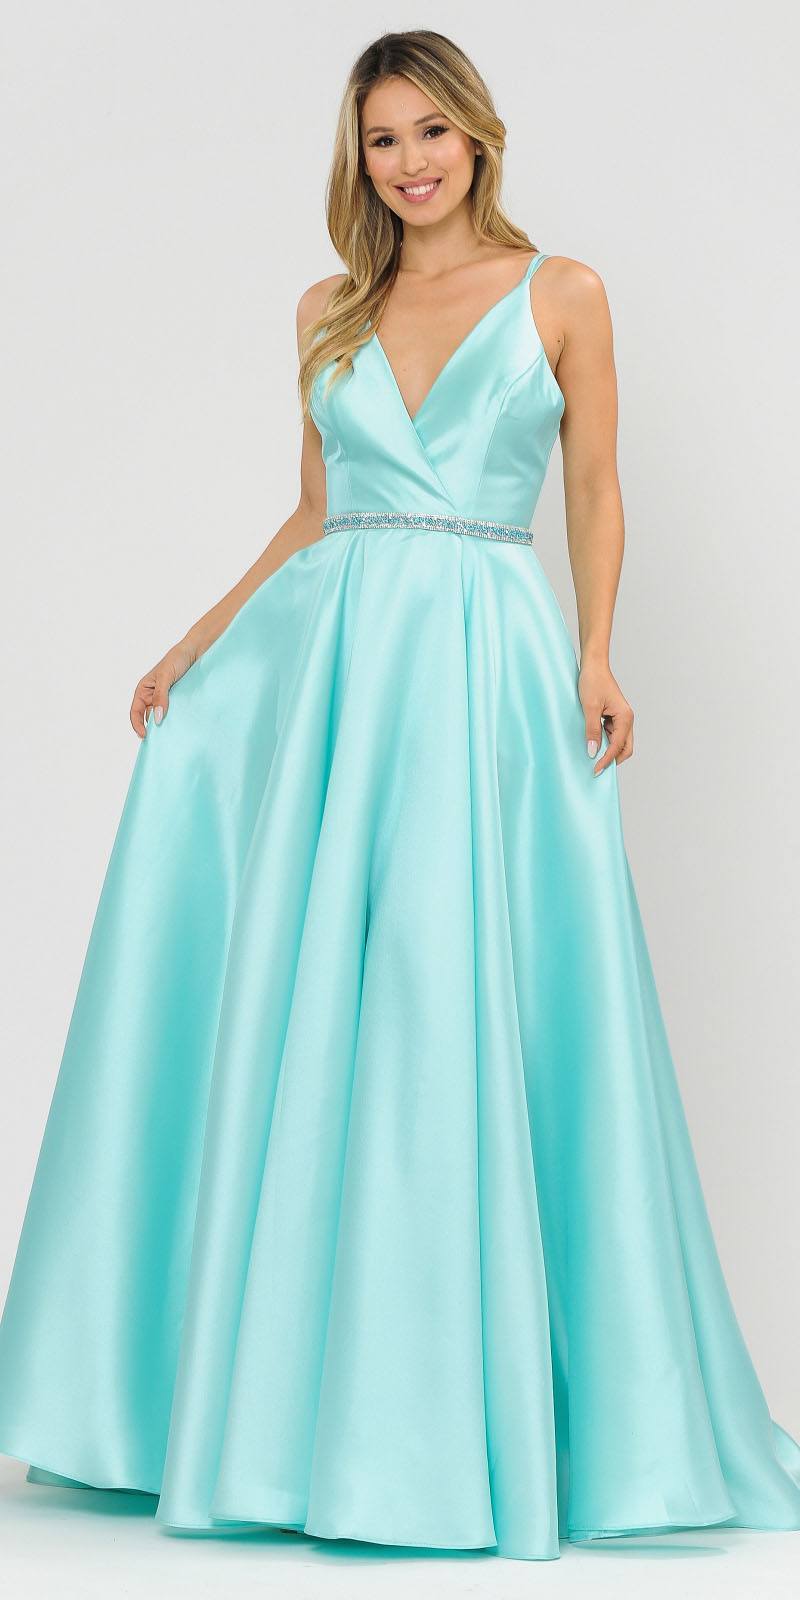 Poly USA 8690 V-Neck Long Prom Dress Mint with Pockets